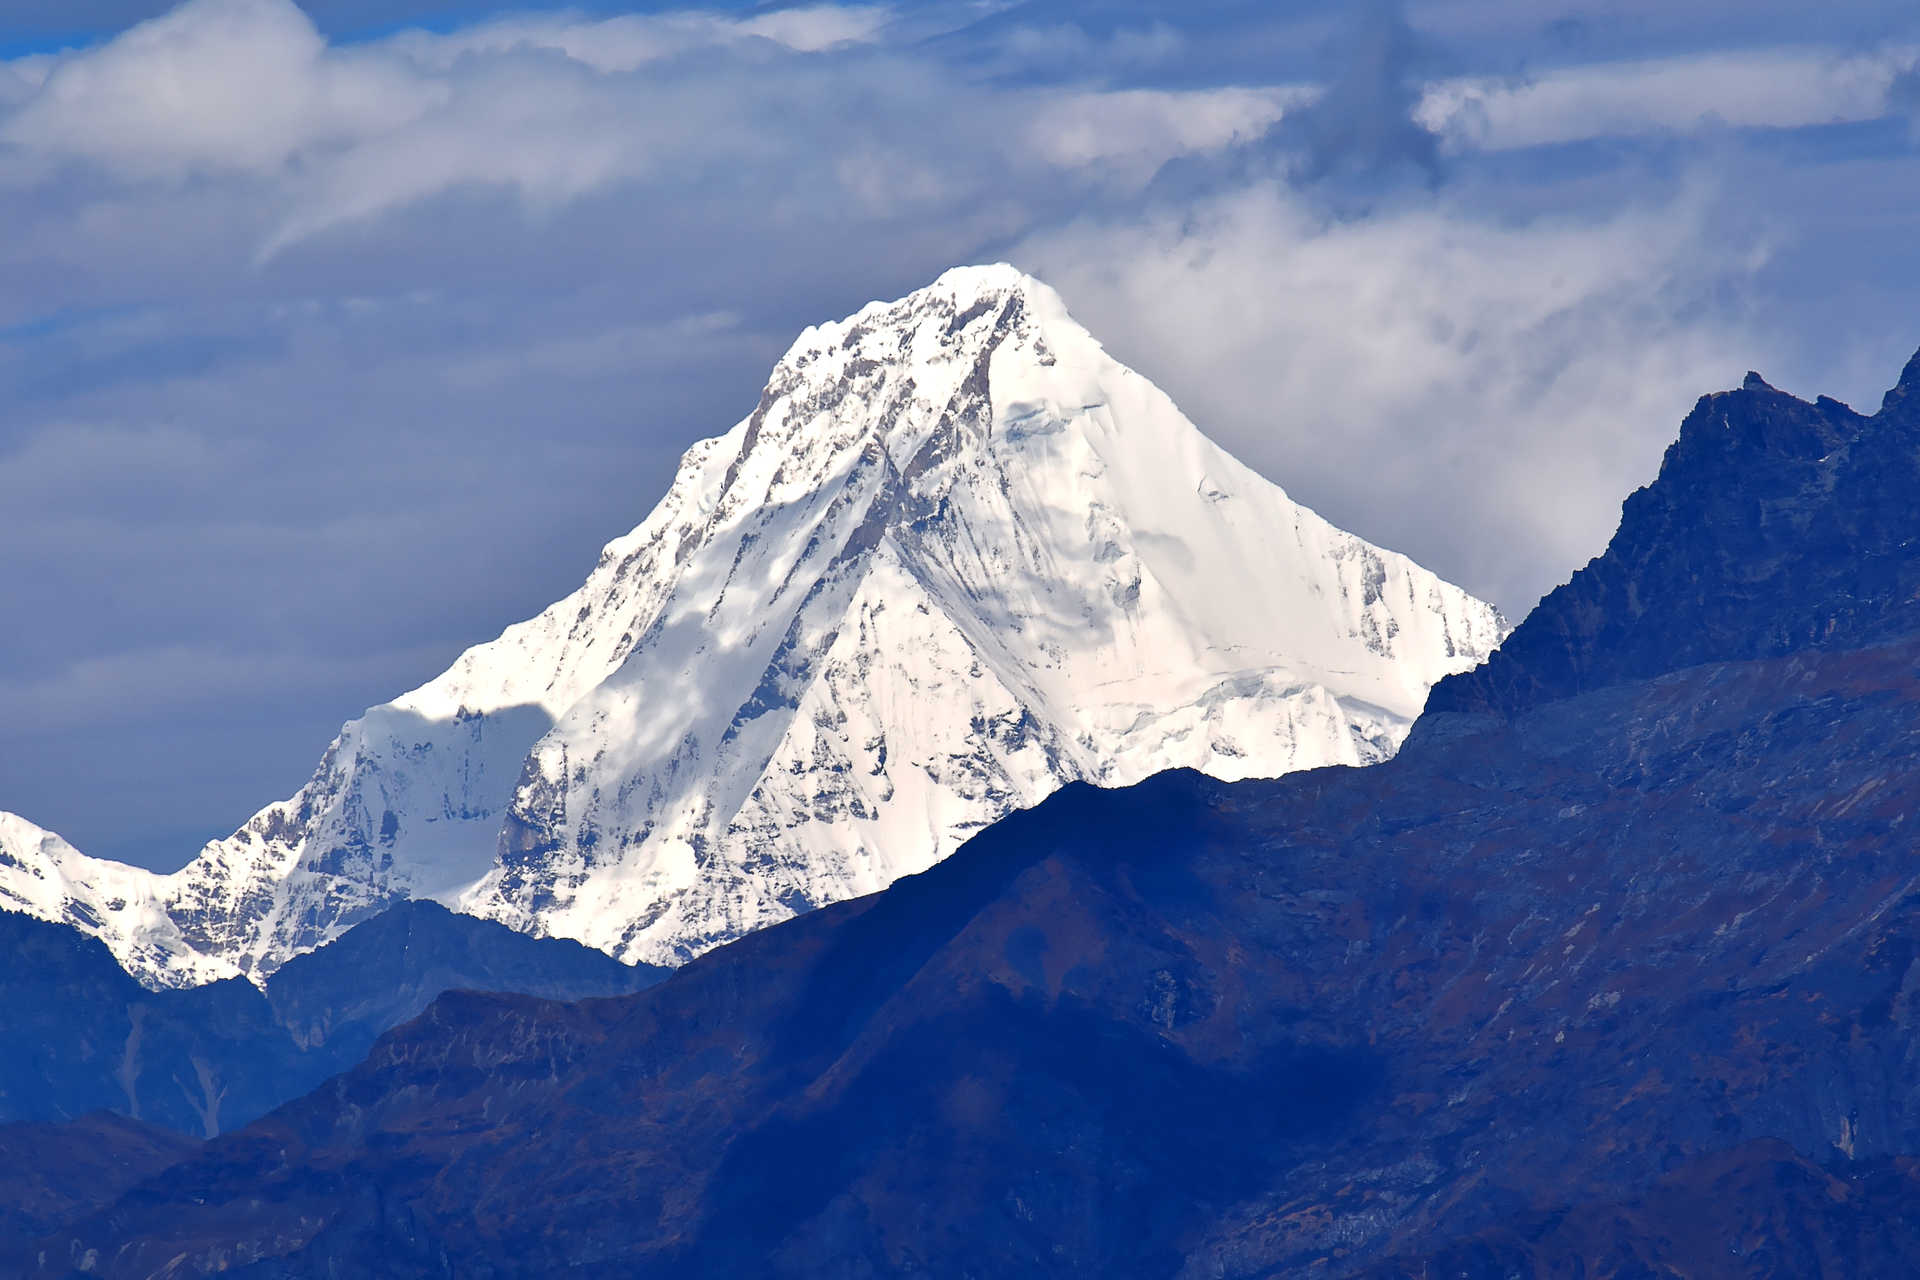 Chomolhari Peak